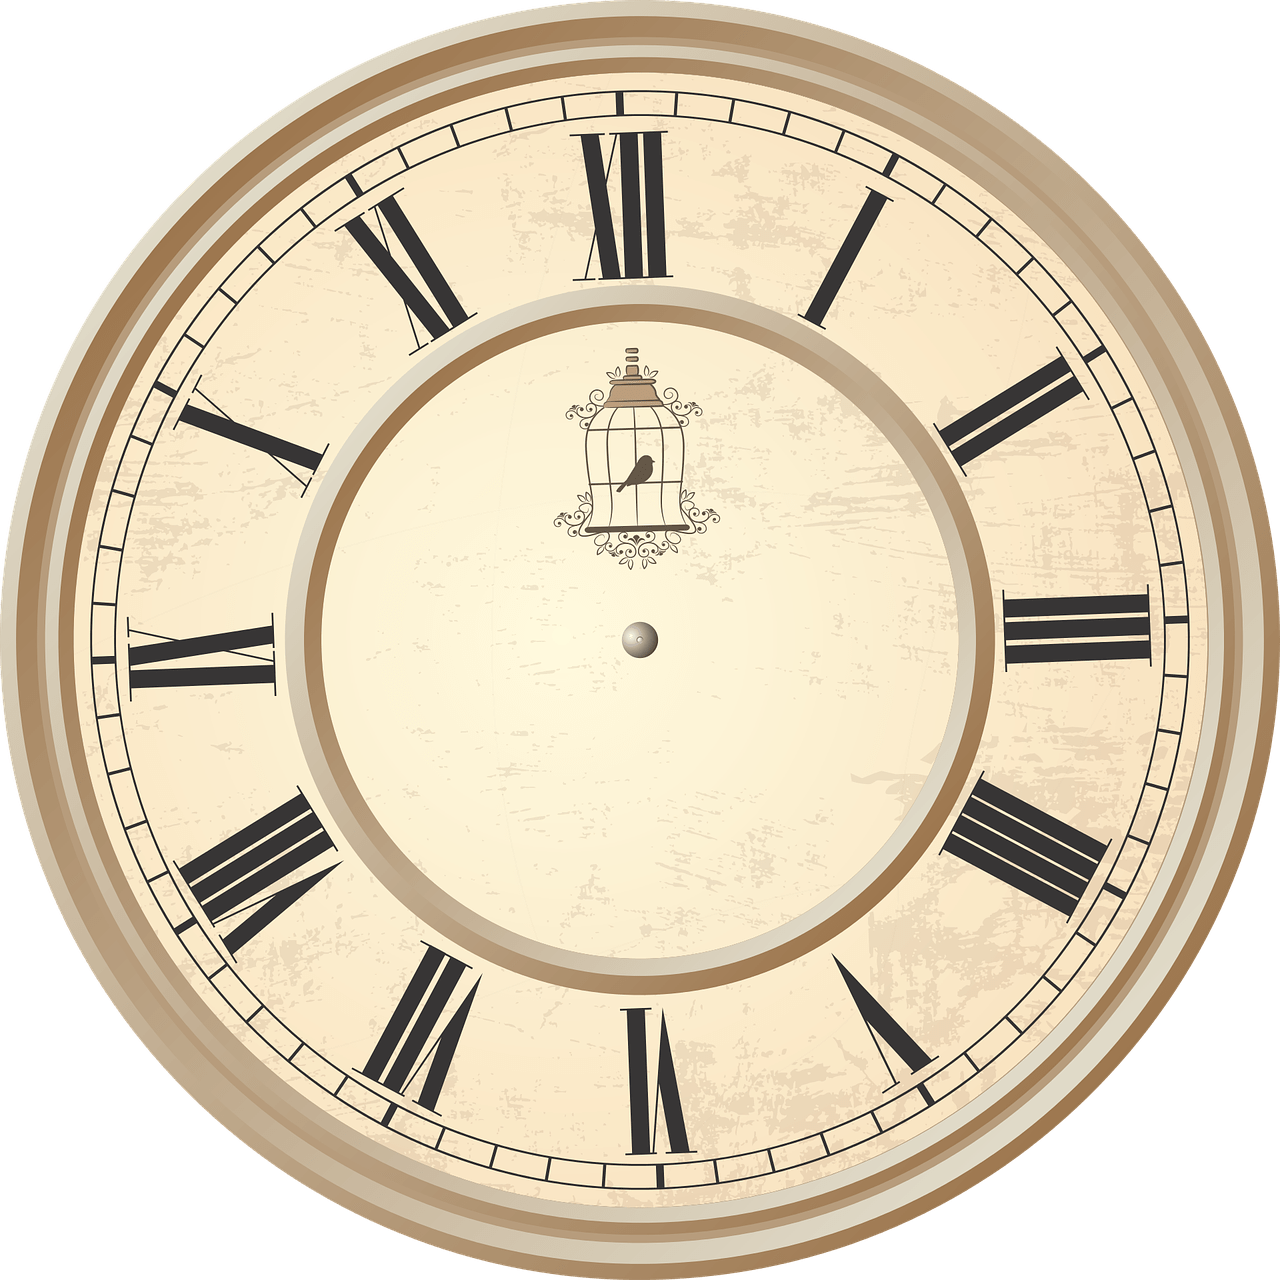 Clock Antique